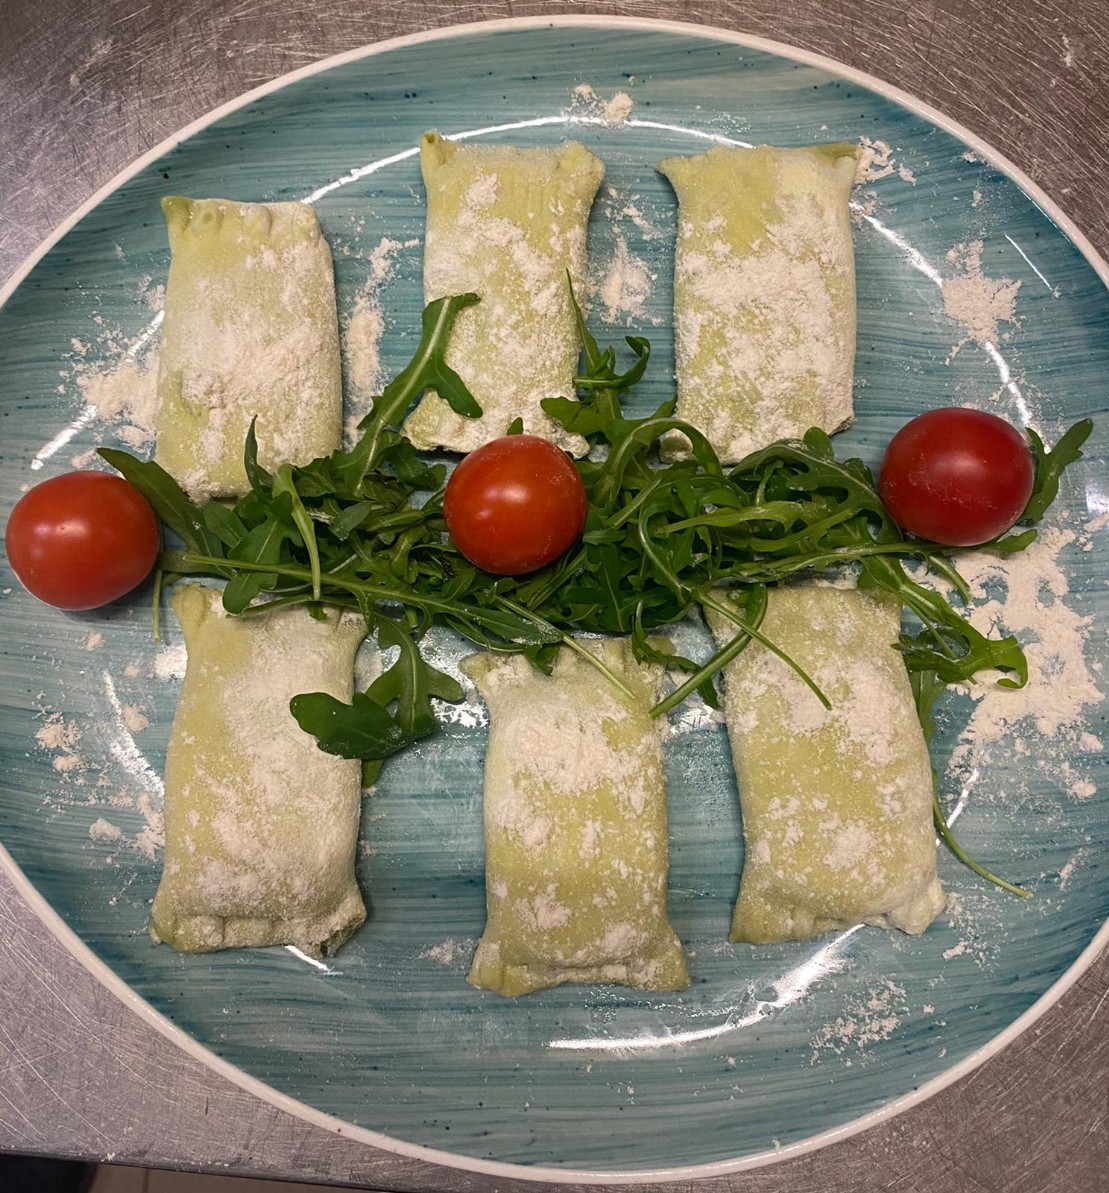 Hausgemachte Teigtaschen gefüllt mit Ricotta und Spinat in leichter Tomaten-Sahnesauce